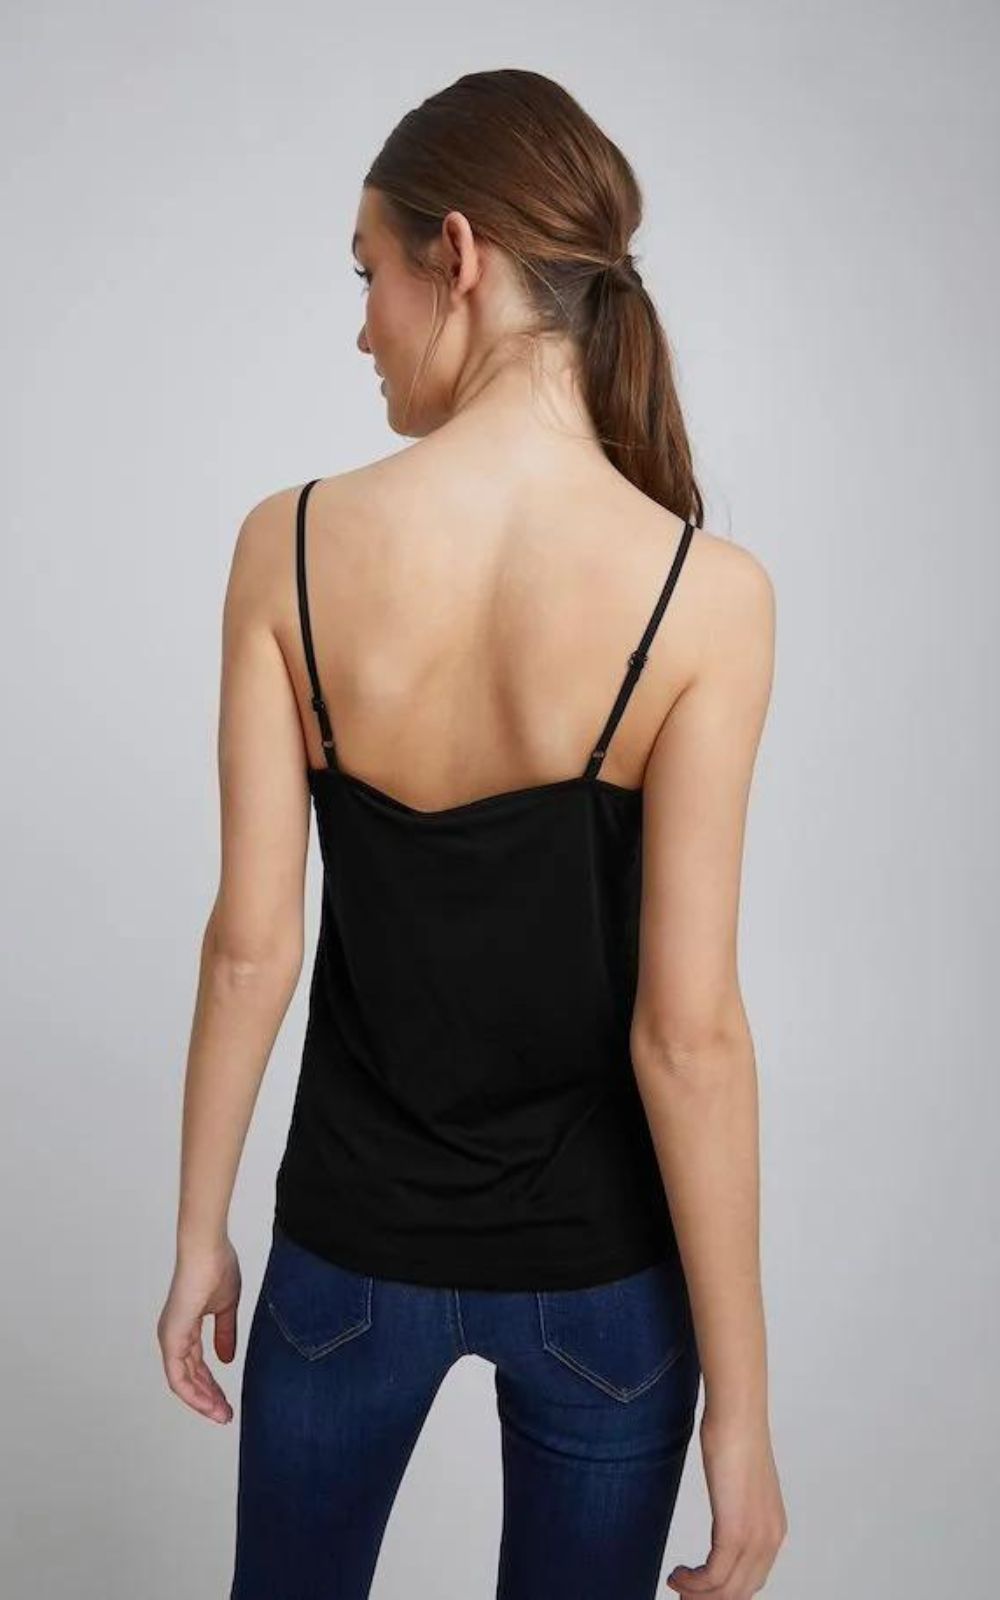 Μπλούζα Γυναικεία Τοπ Casual Fit Μαύρη-My Boutique